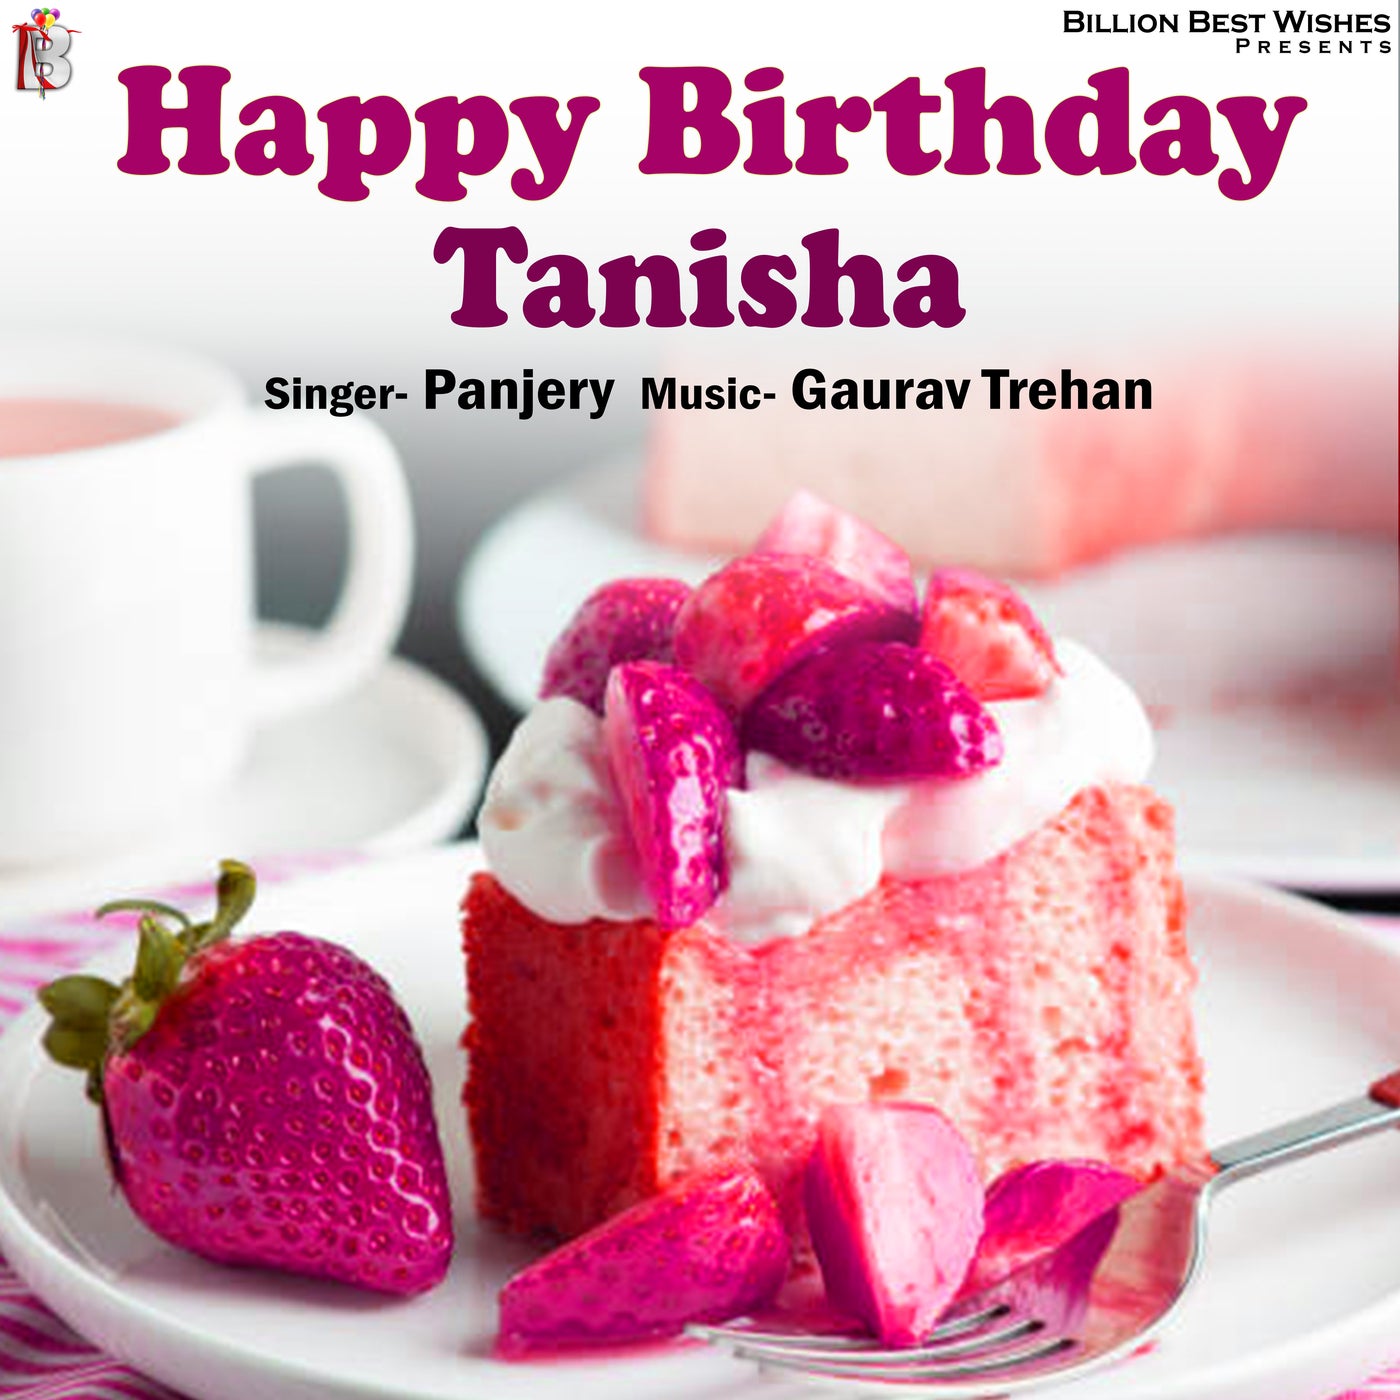 ❤️ Best Chocolate Birthday Cake For Tanisha